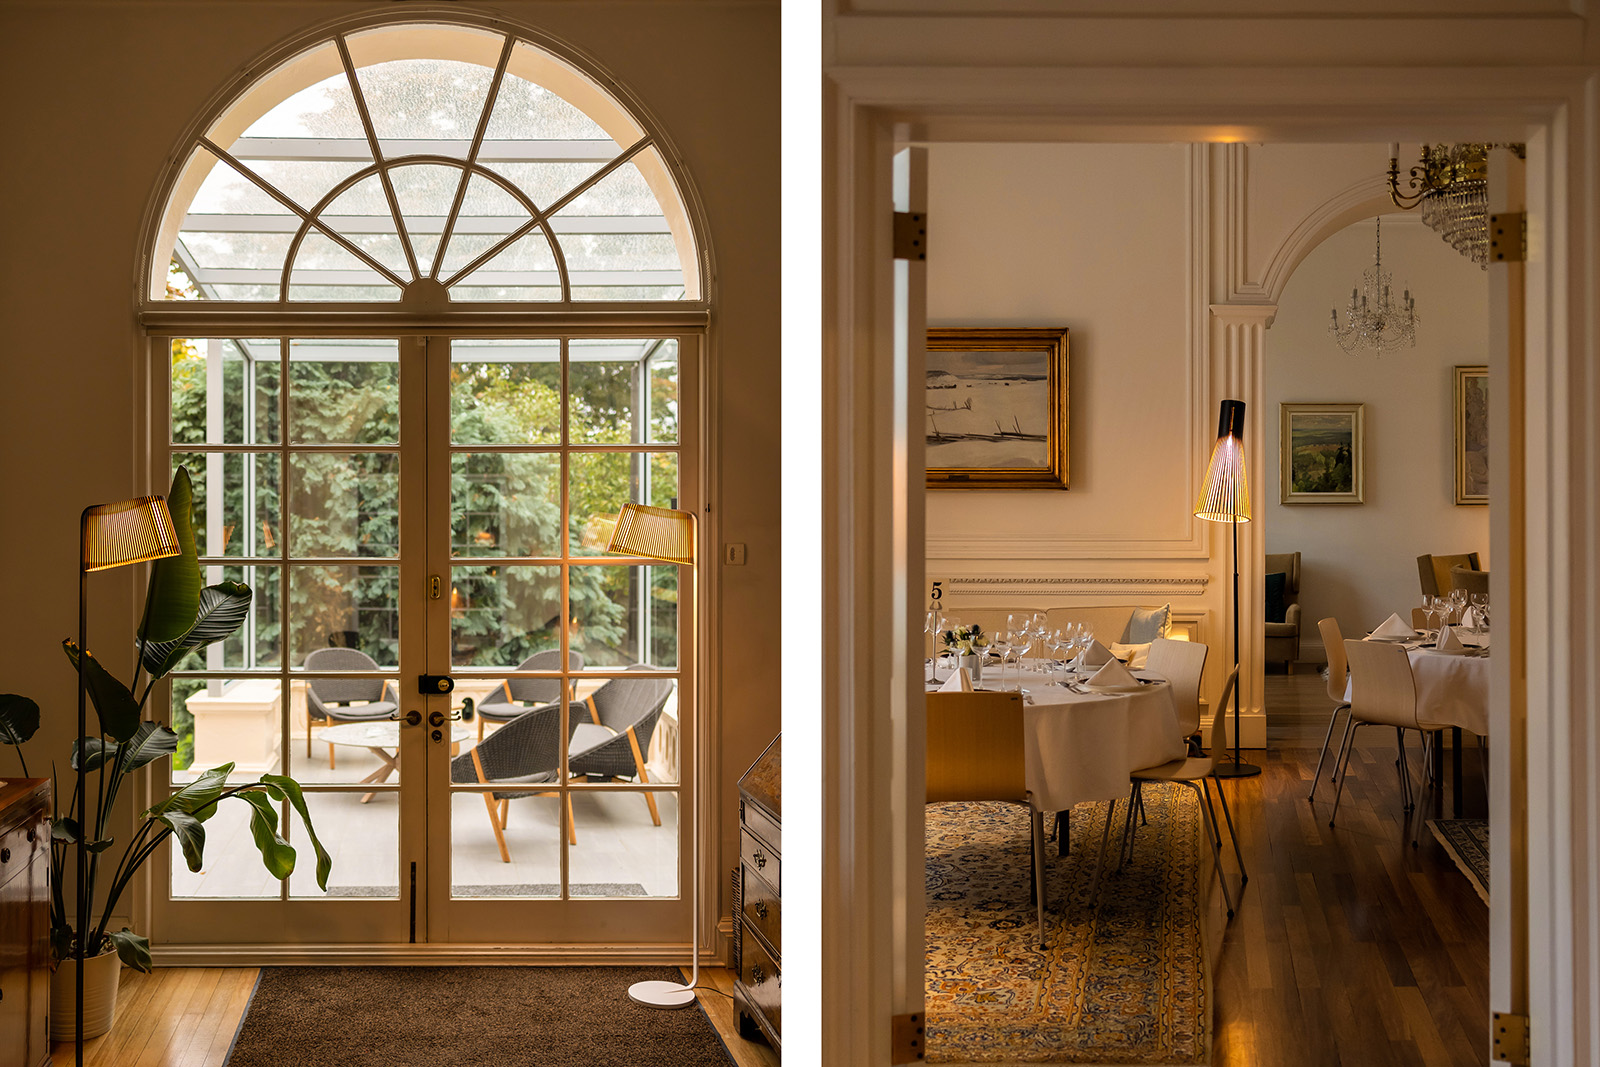 Two floor lamps besides a garden door. Dining room view through an open door.